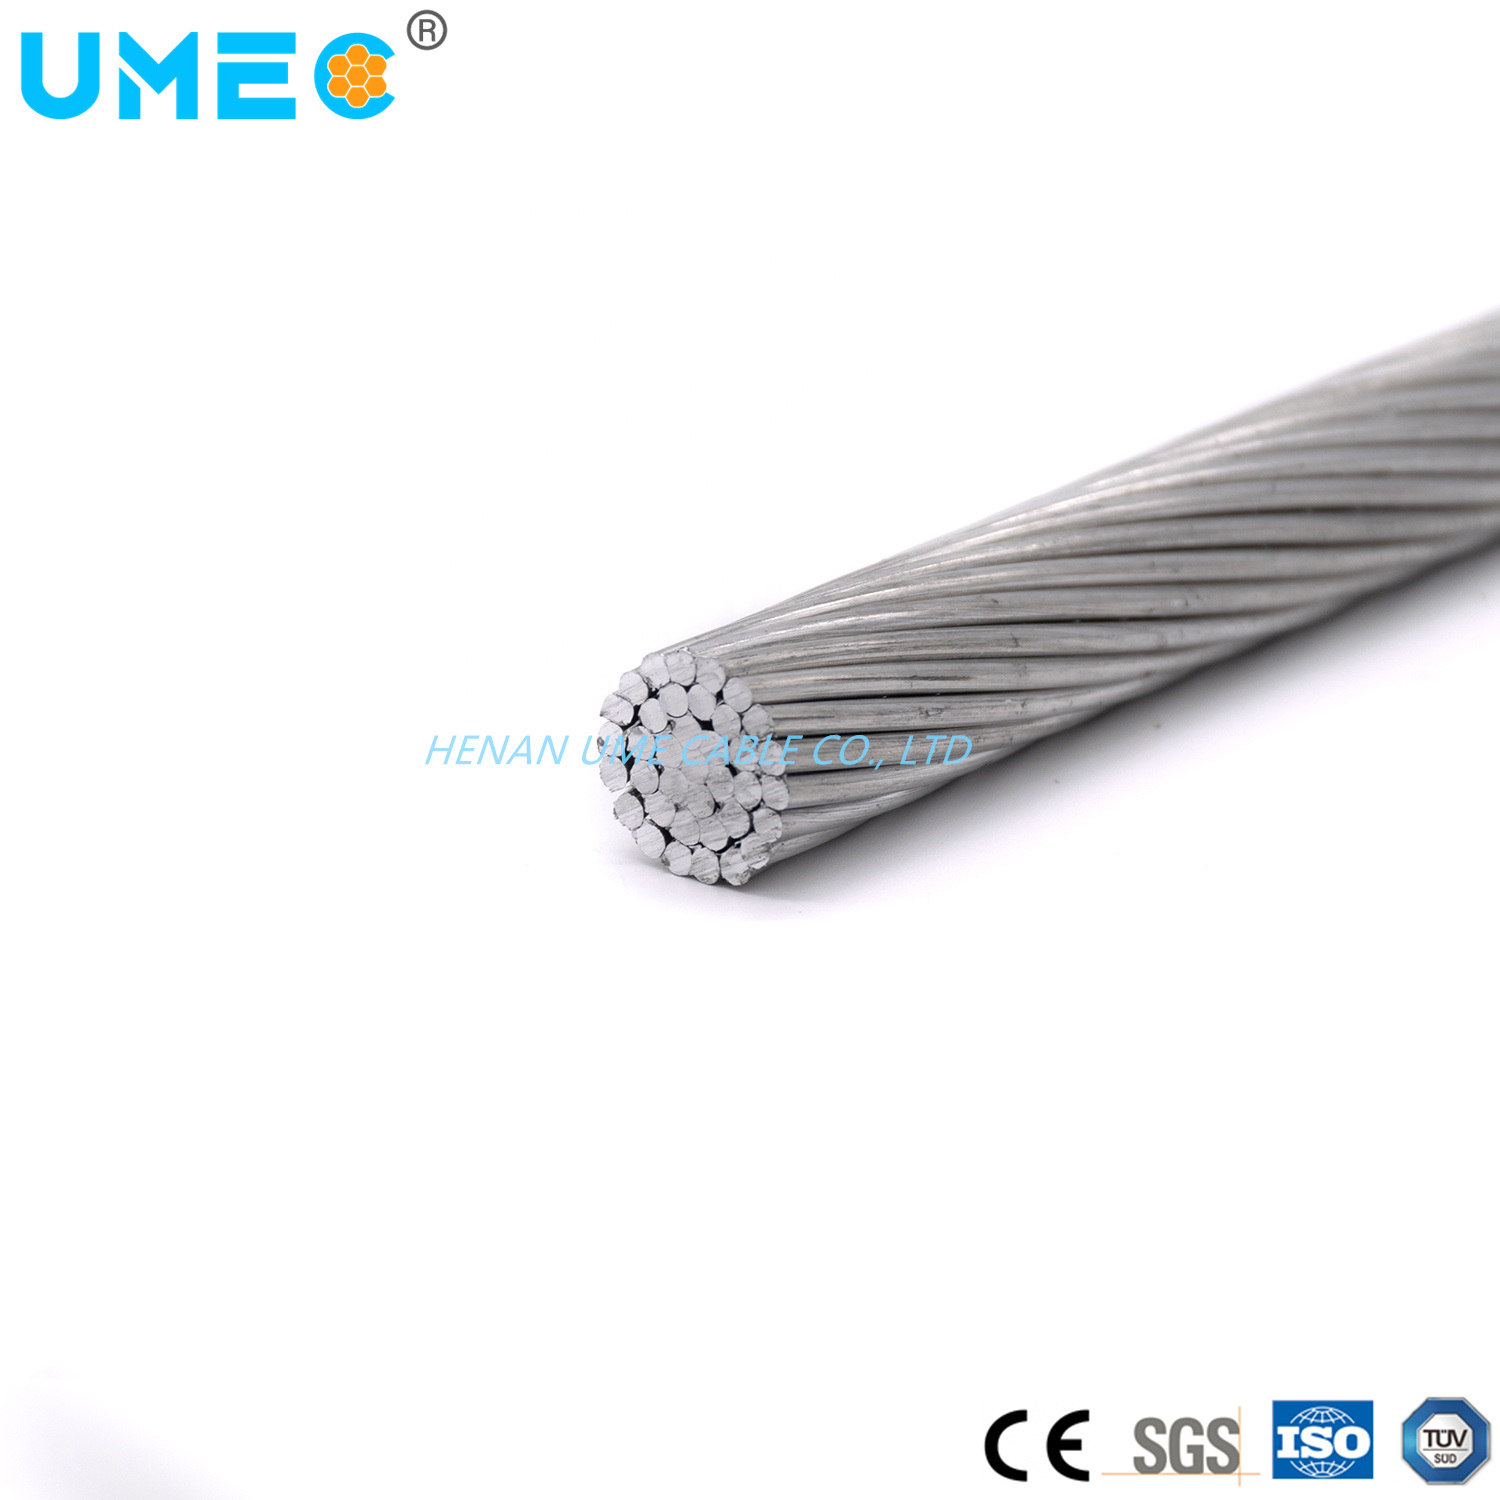 
                Altamente conductor eléctrico conductor desnudo cable de aluminio 1350 99,50% de aluminio puro AAC Precio Cable eléctrico
            